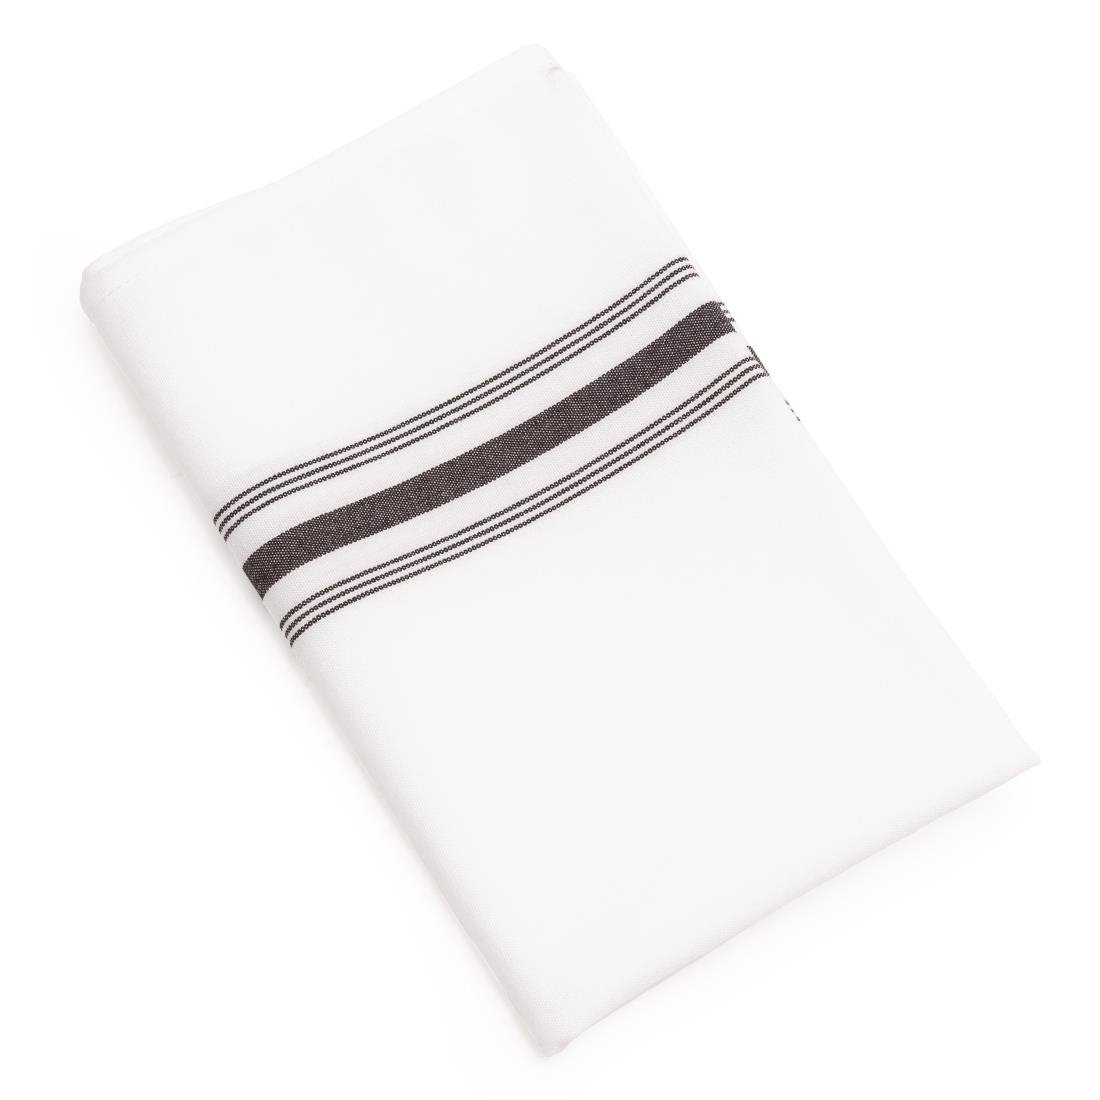 Serviettes de Table | 100% Polyester | 560x460mm | Lot de 10 Pièces | Disponible en 2 Couleurs